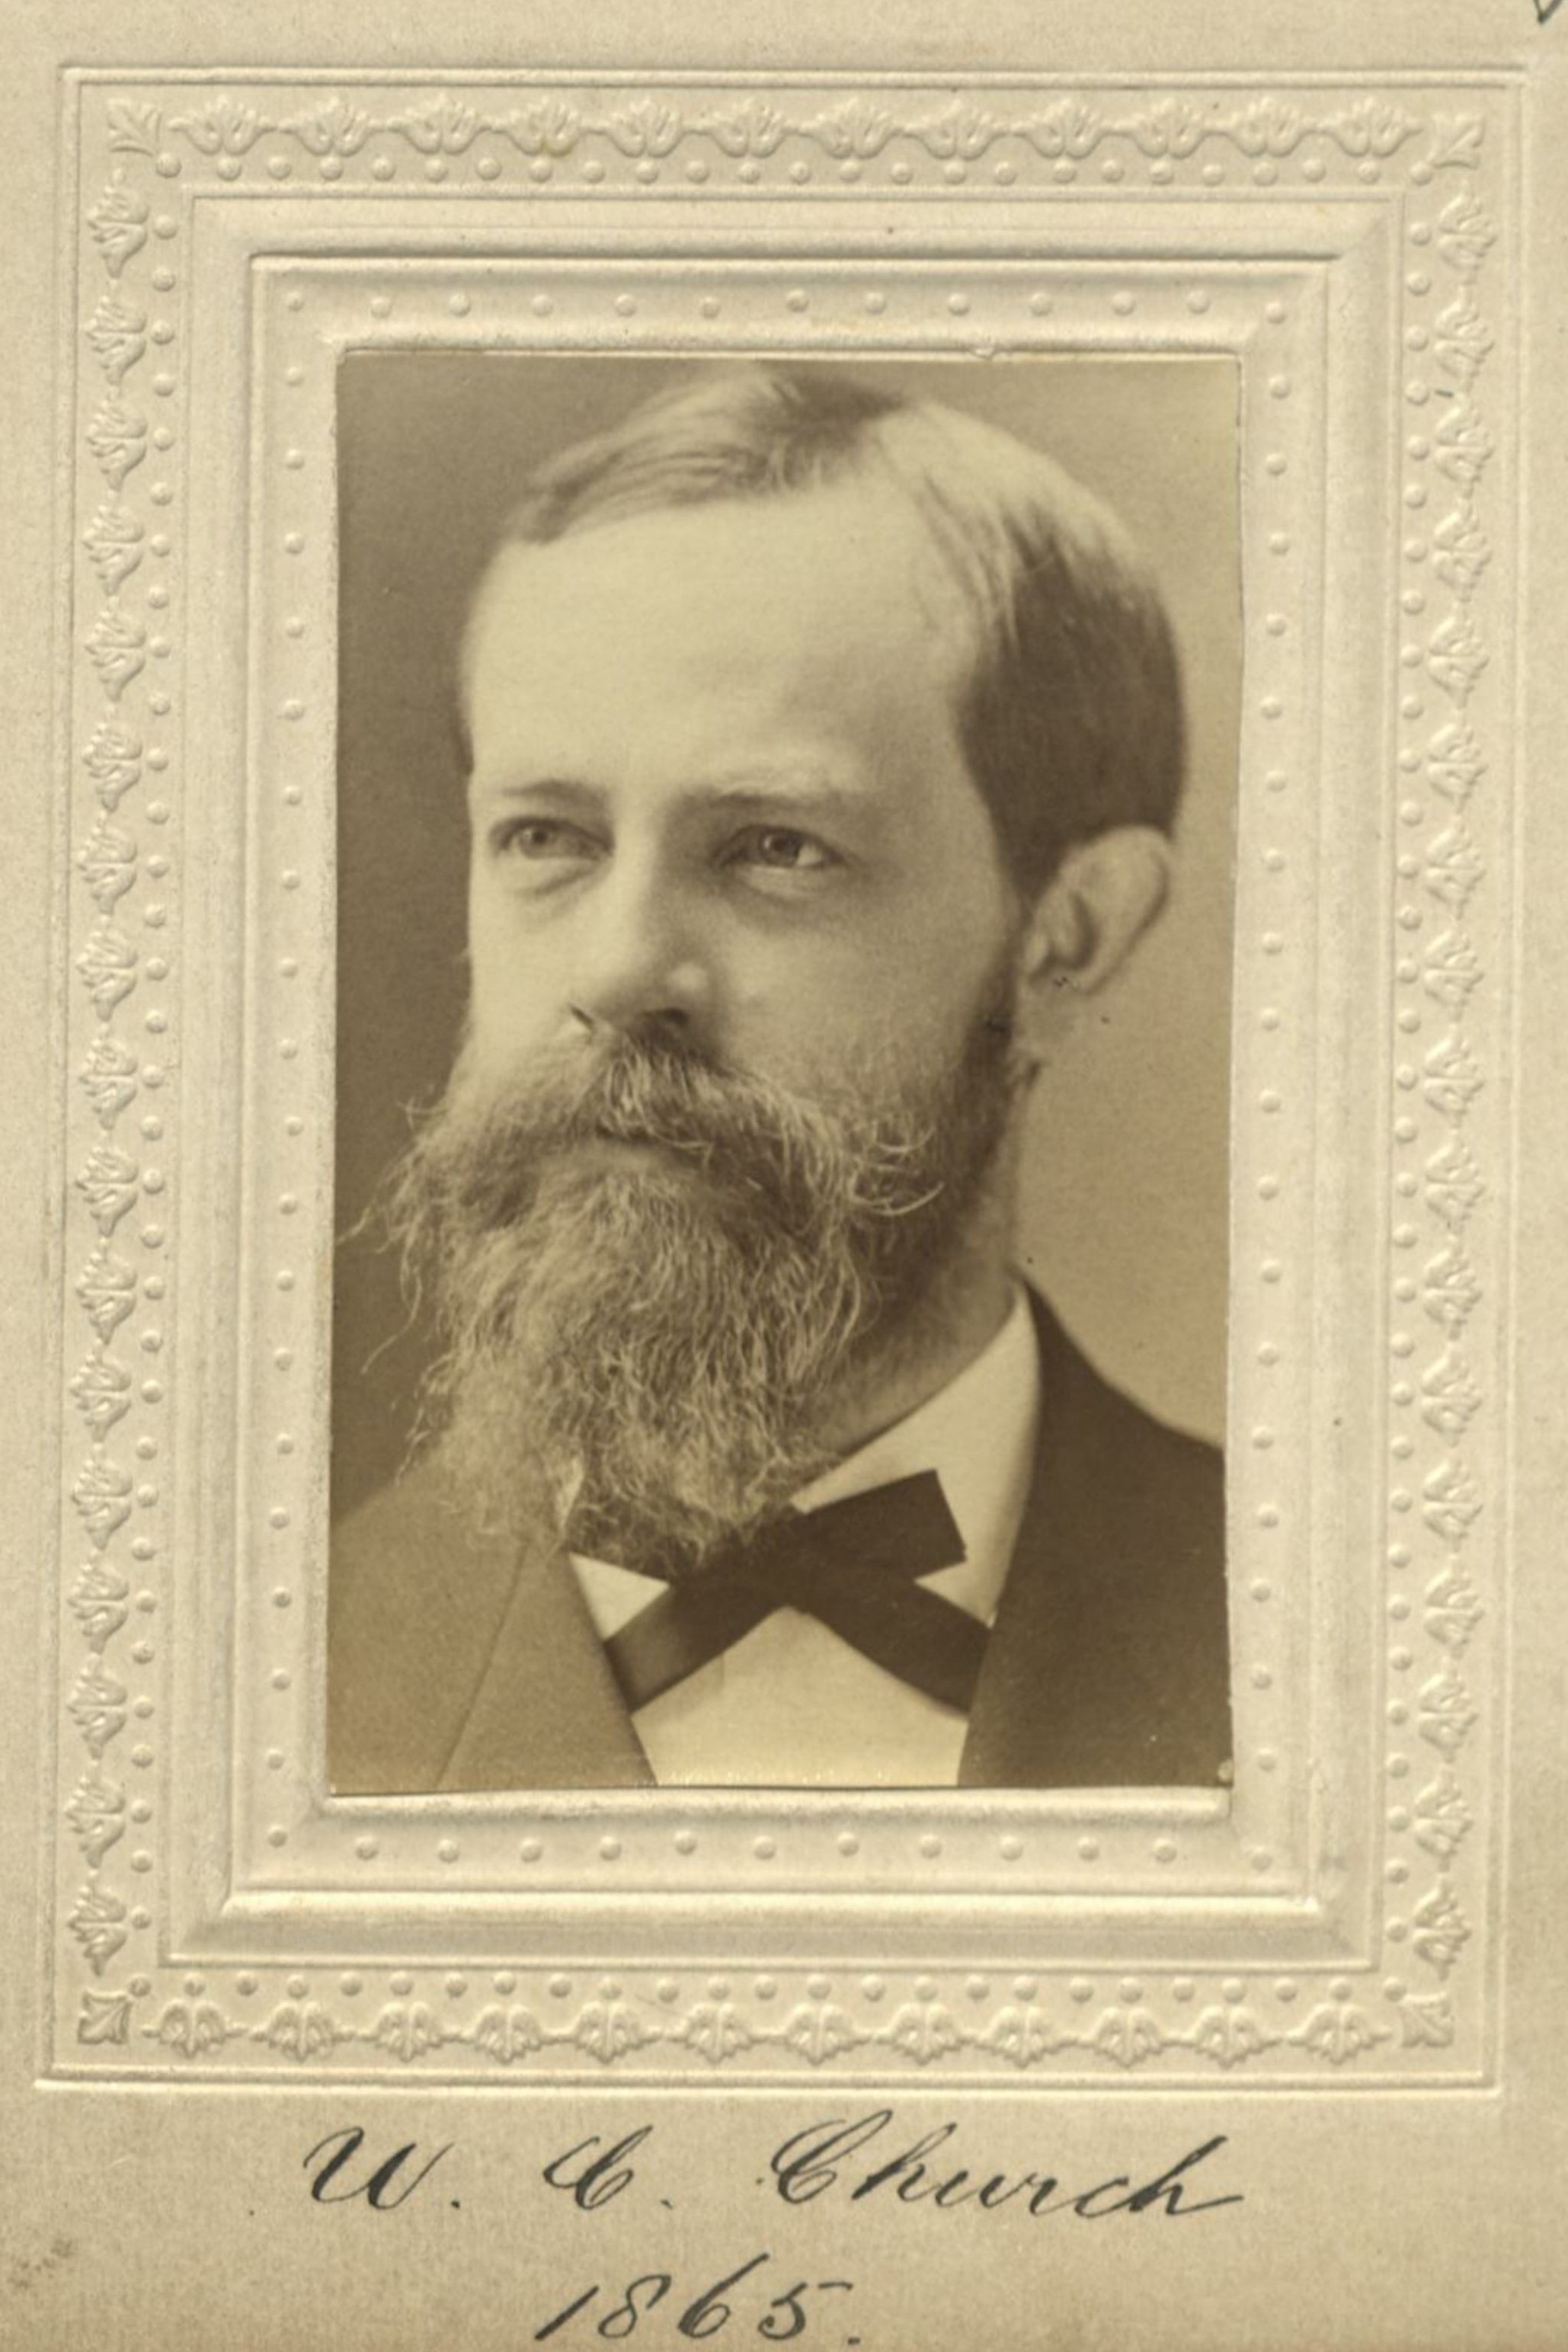 Member portrait of William Conant Church